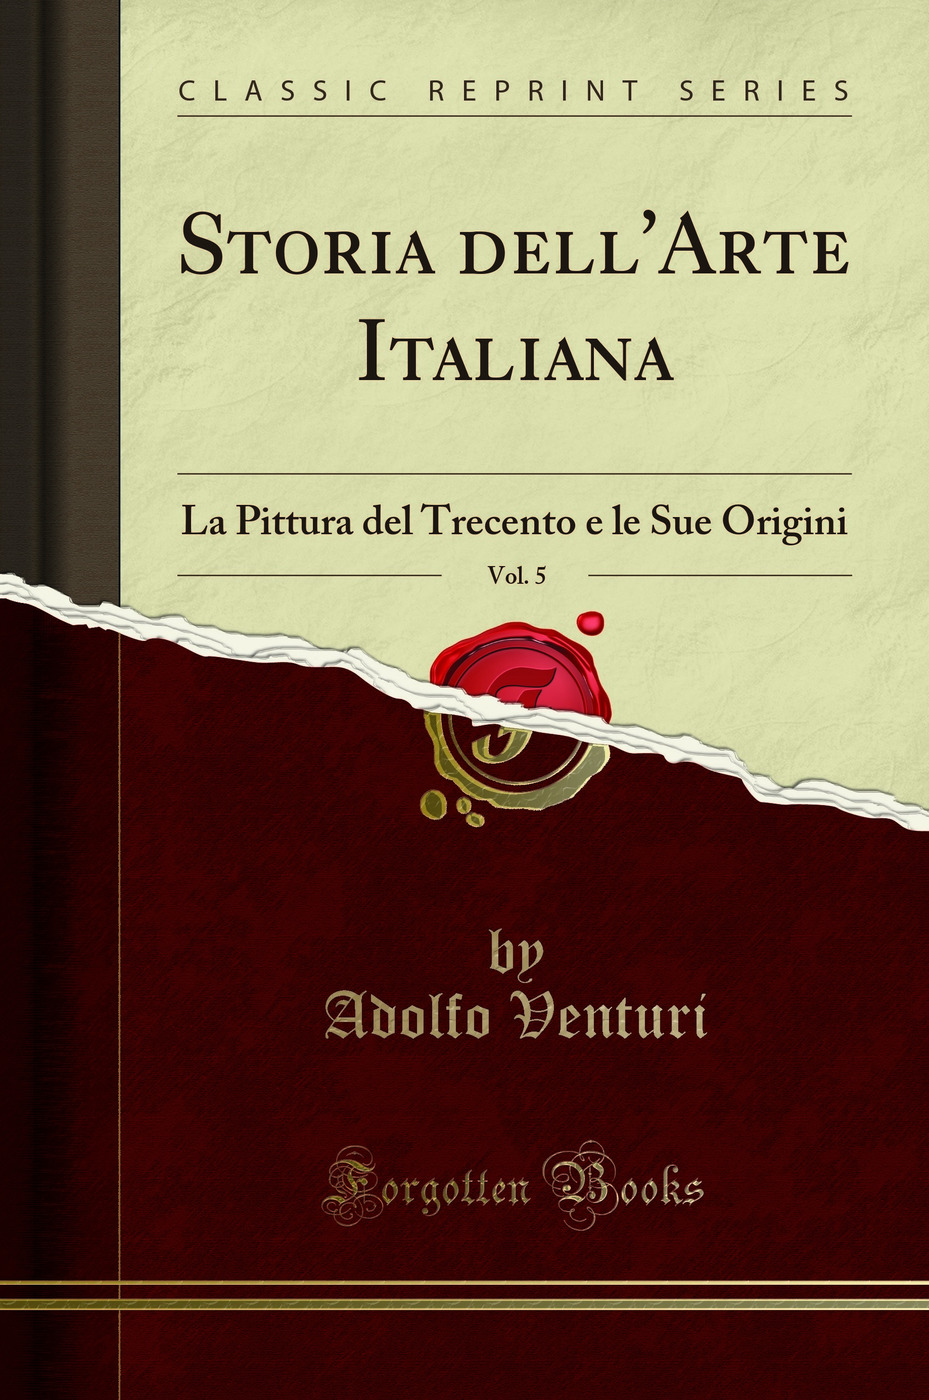 Storia dell'Arte Italiana, Vol. 5: La Pittura del Trecento e le Sue Origini - Adolfo Venturi